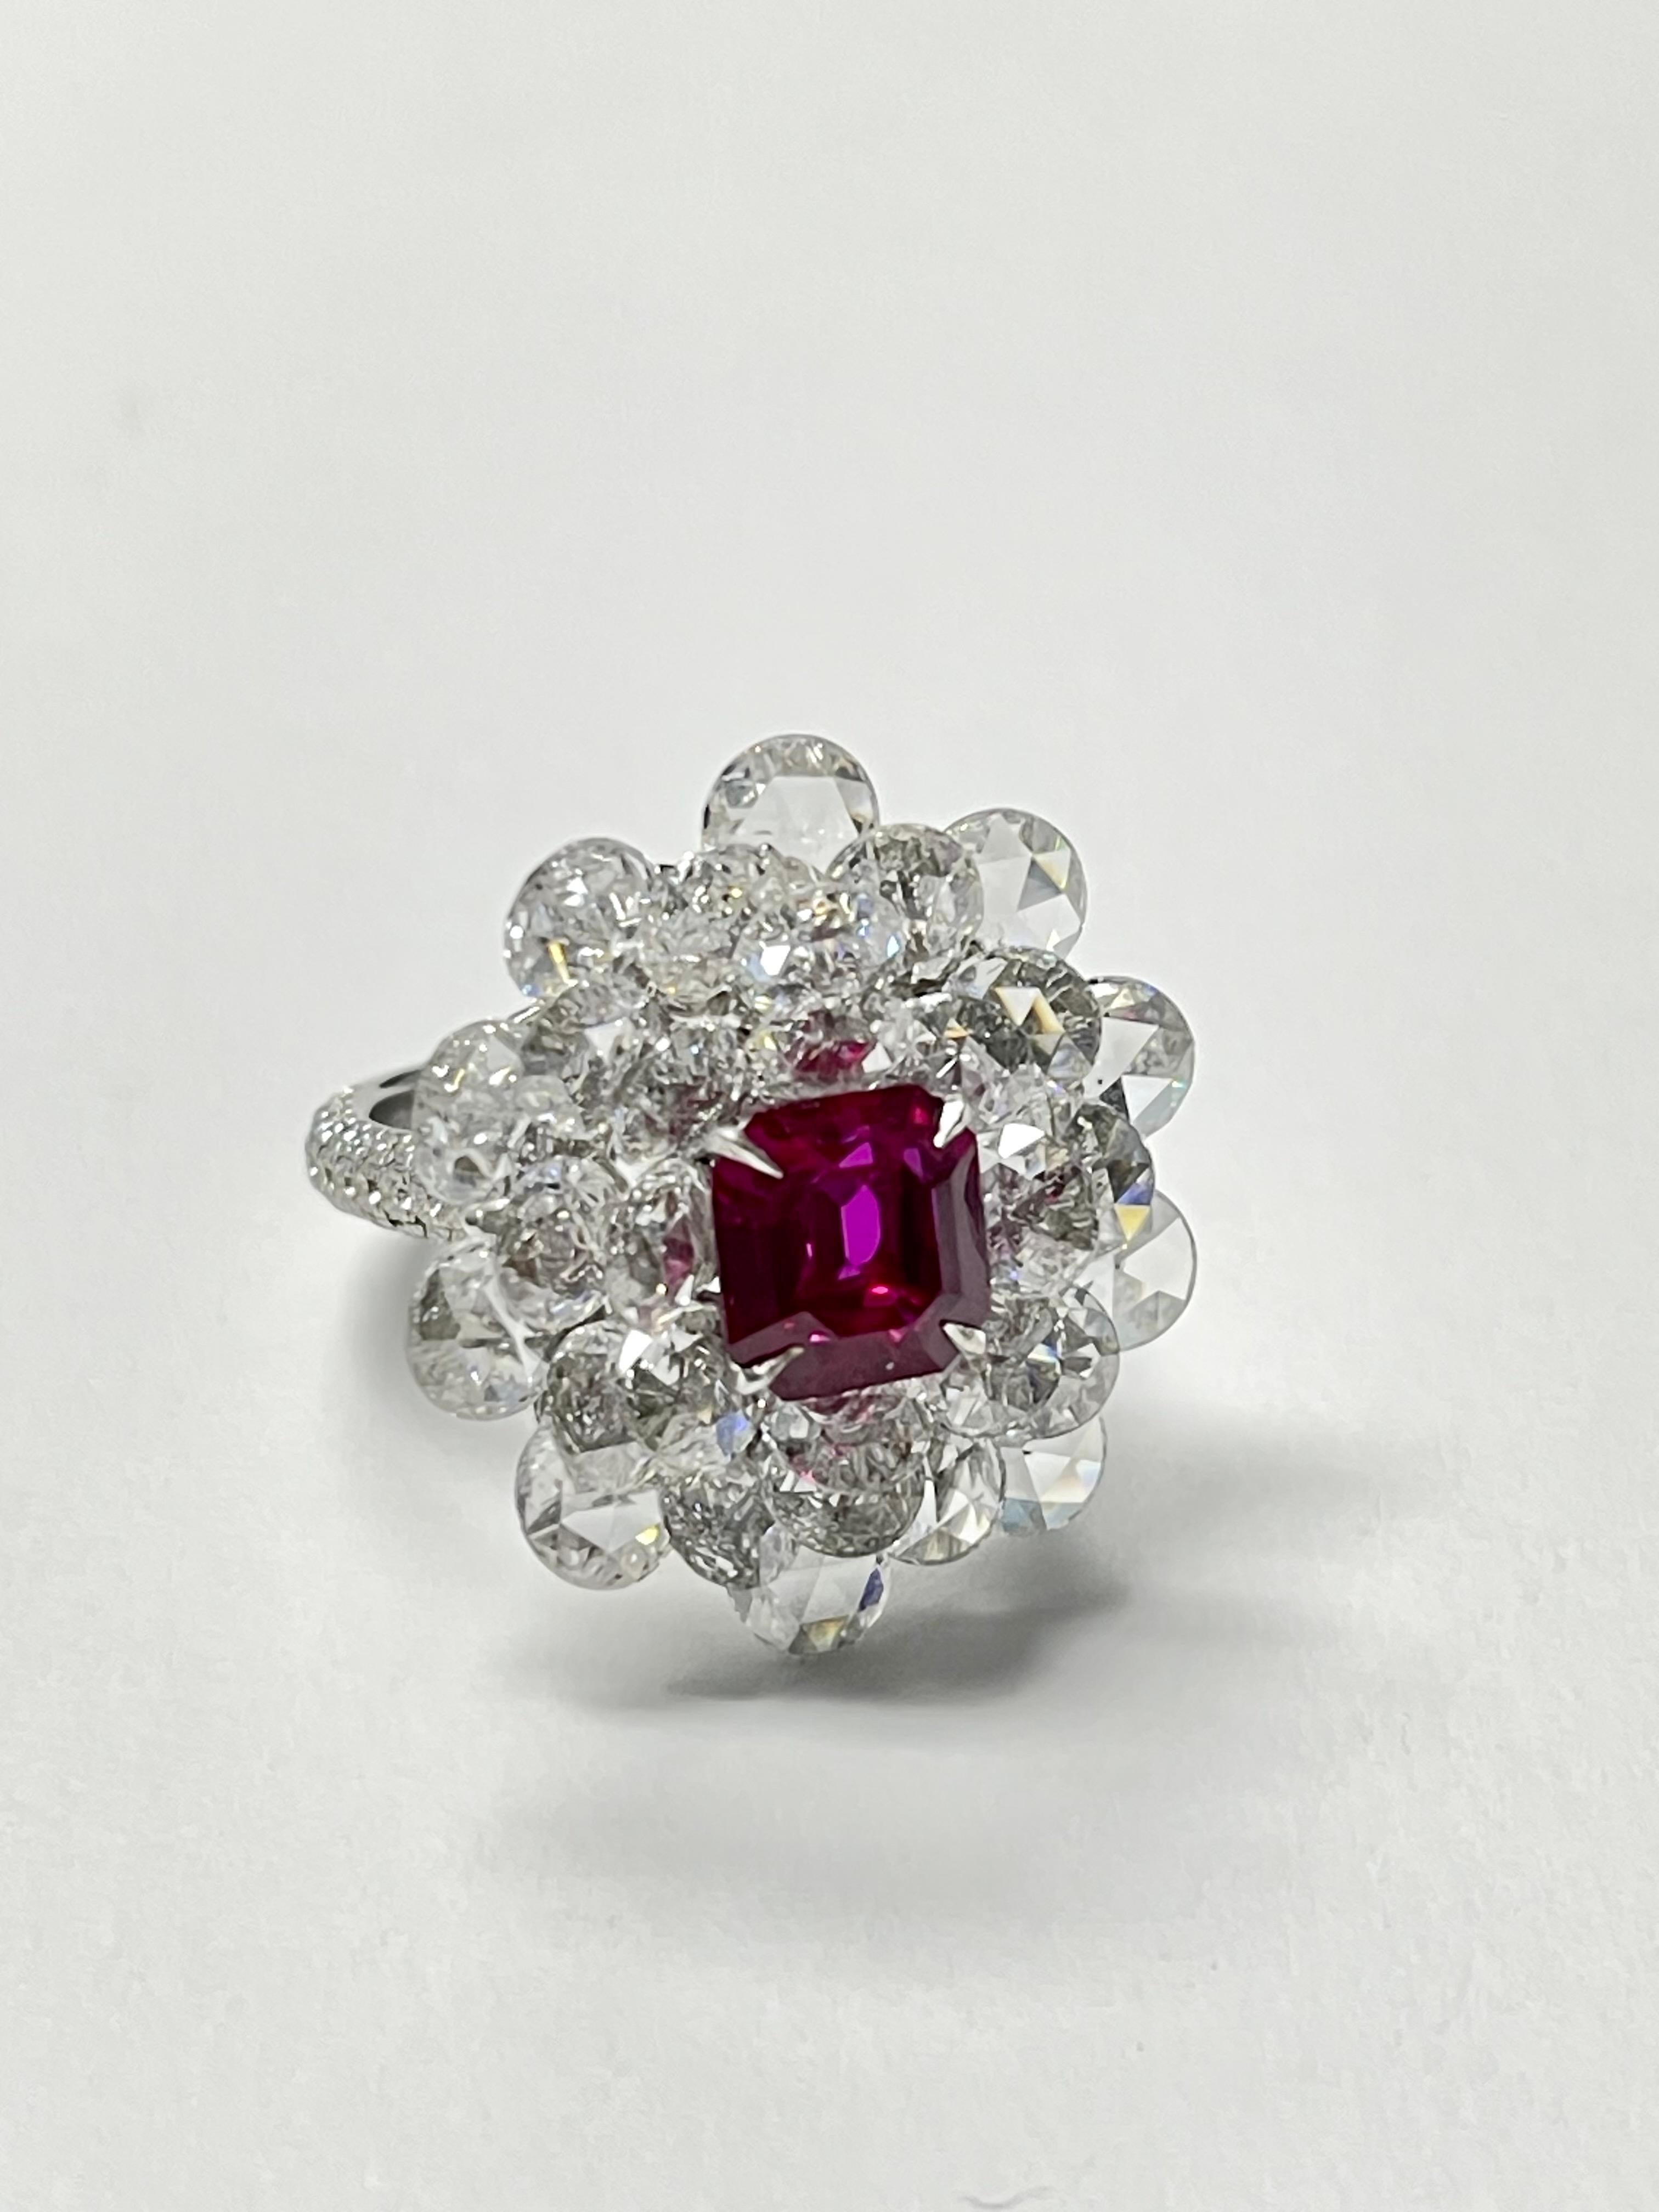   Ring mit Rubin und Diamanten, BURMA NO HEAT GUBELIN UND GIA zertifiziert  (Zeitgenössisch)